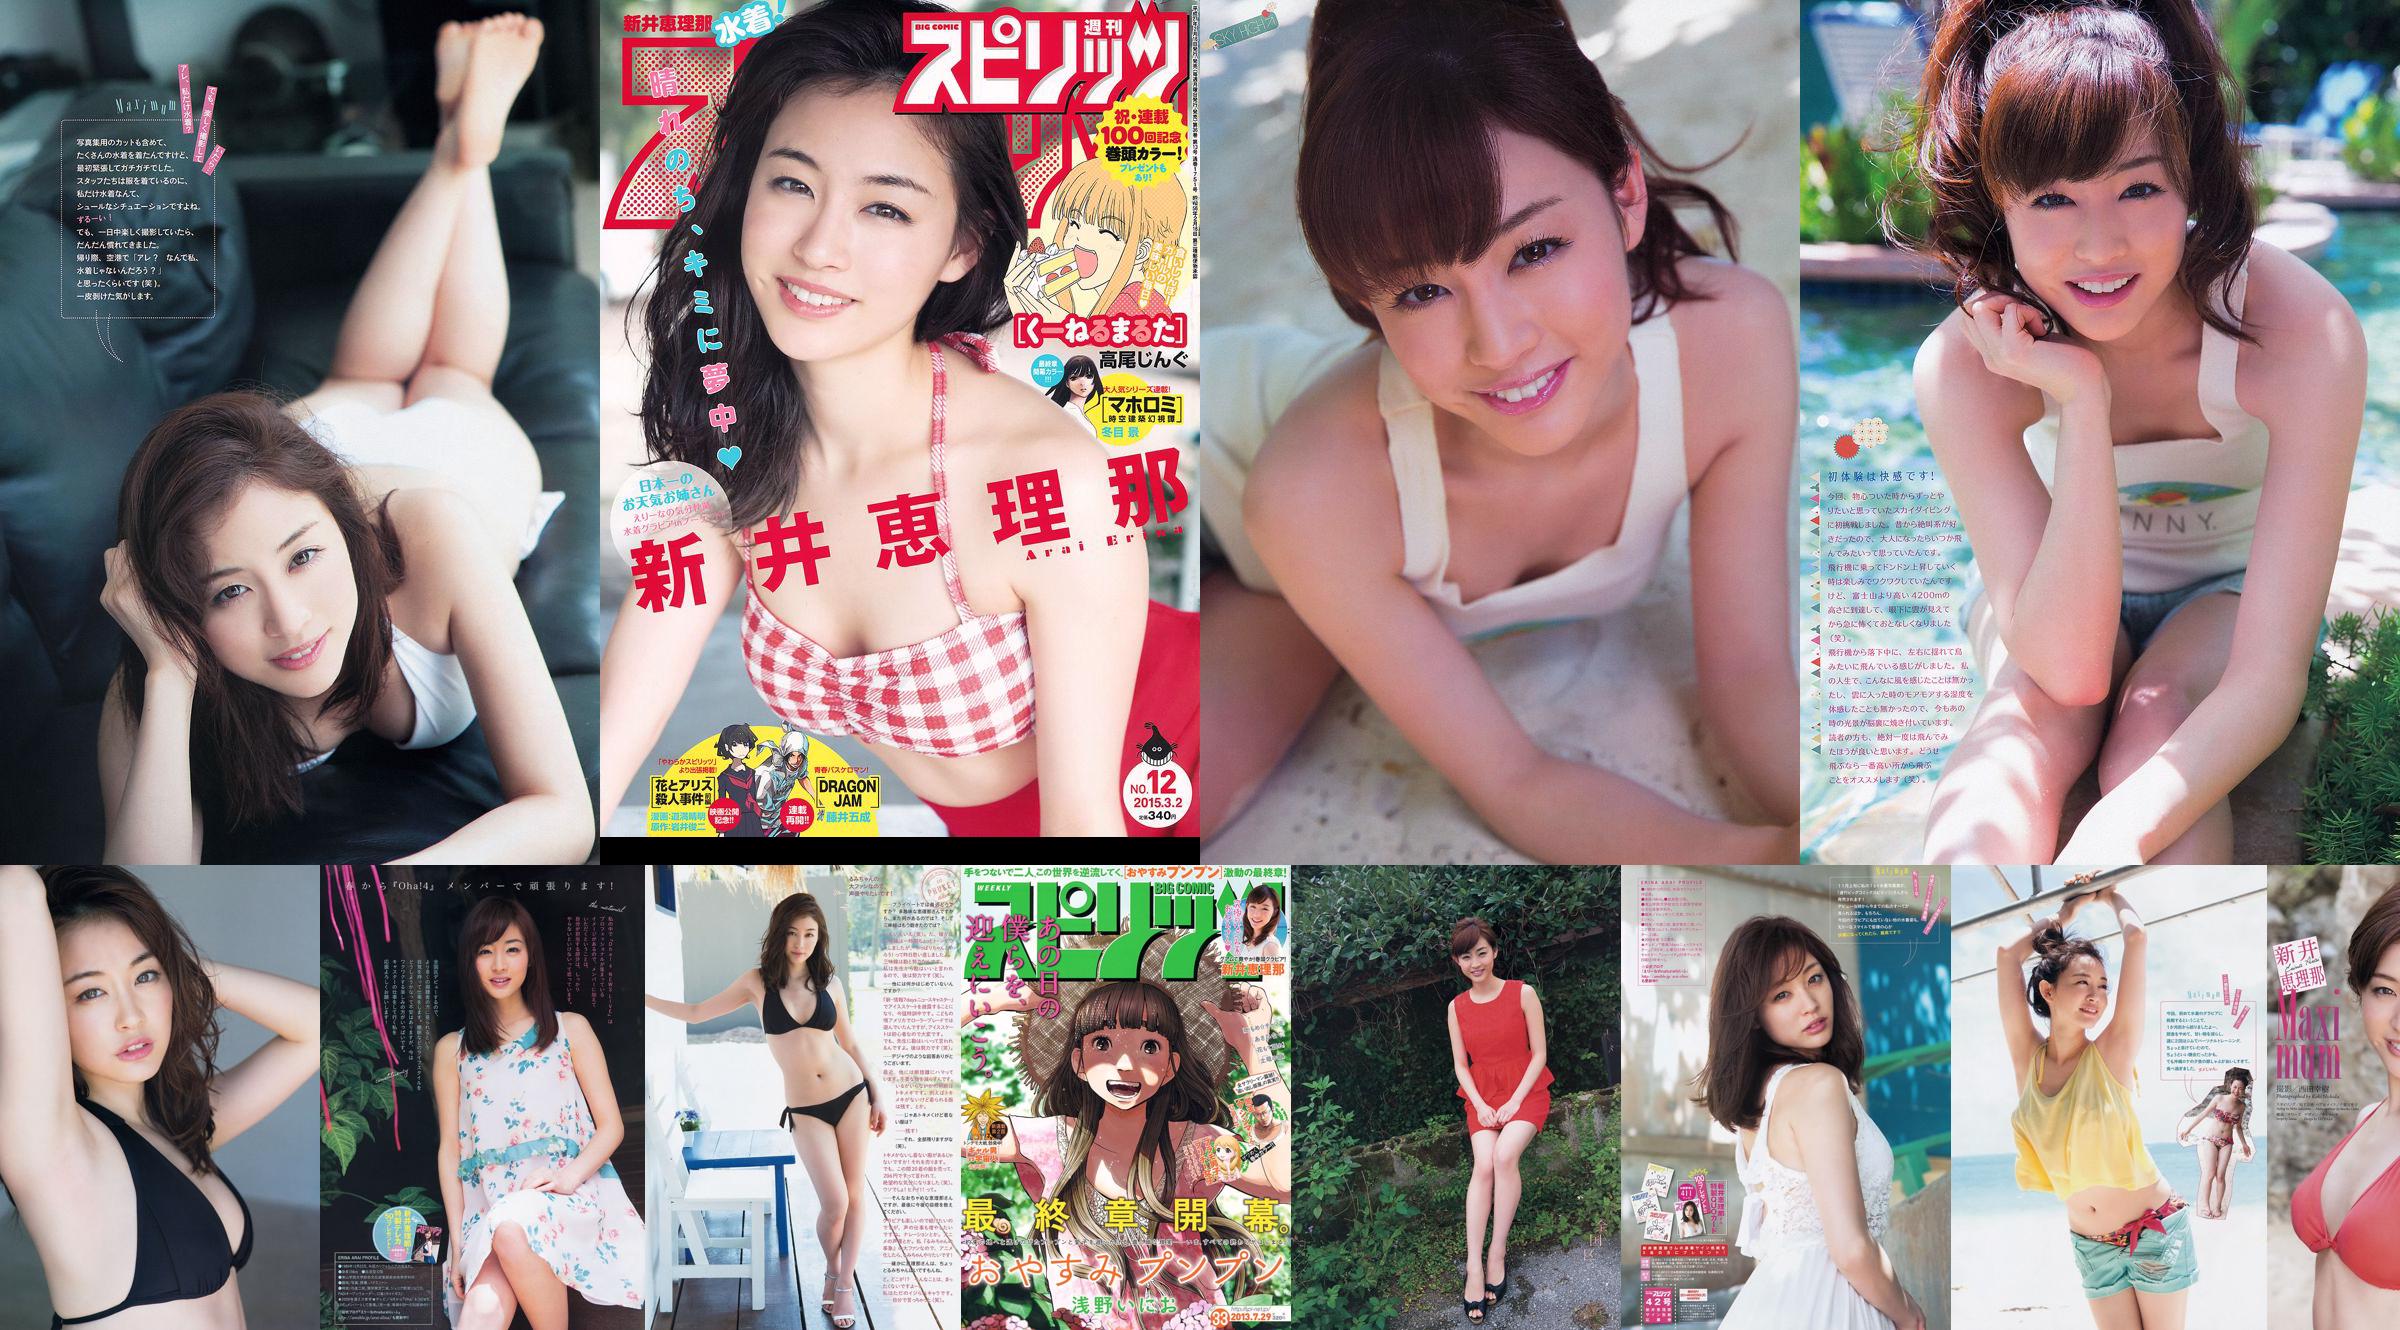 [Wöchentliche große Comic-Geister] Erina Arai No.14 Photo Magazine im Jahr 2013 No.1d525c Seite 1